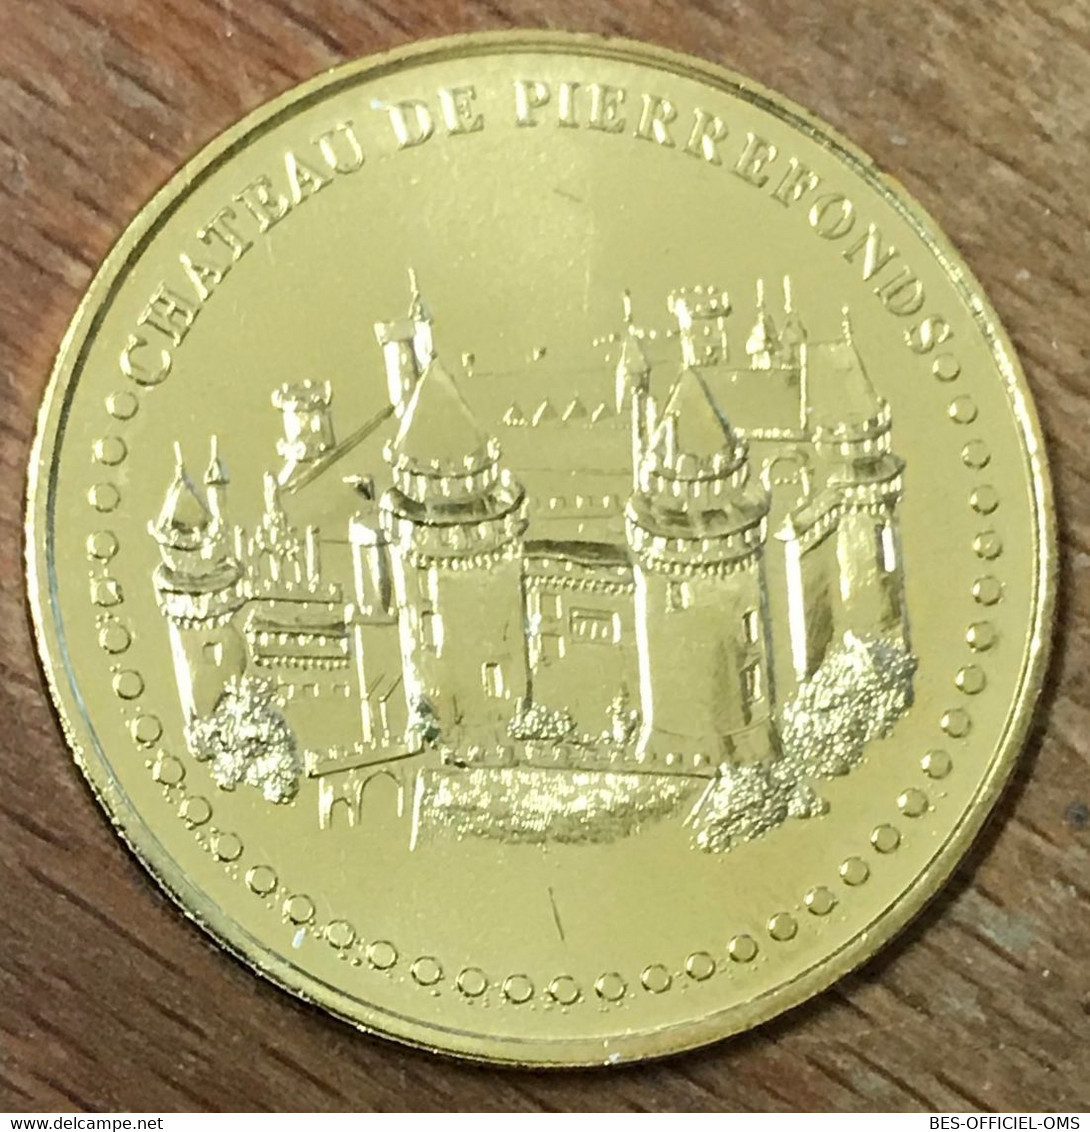 60 CHÂTEAU DE PIERREFONDS MDP 2017 MÉDAILLE SOUVENIR MONNAIE DE PARIS JETON TOURISTIQUE MEDALS COINS TOKENS - 2017